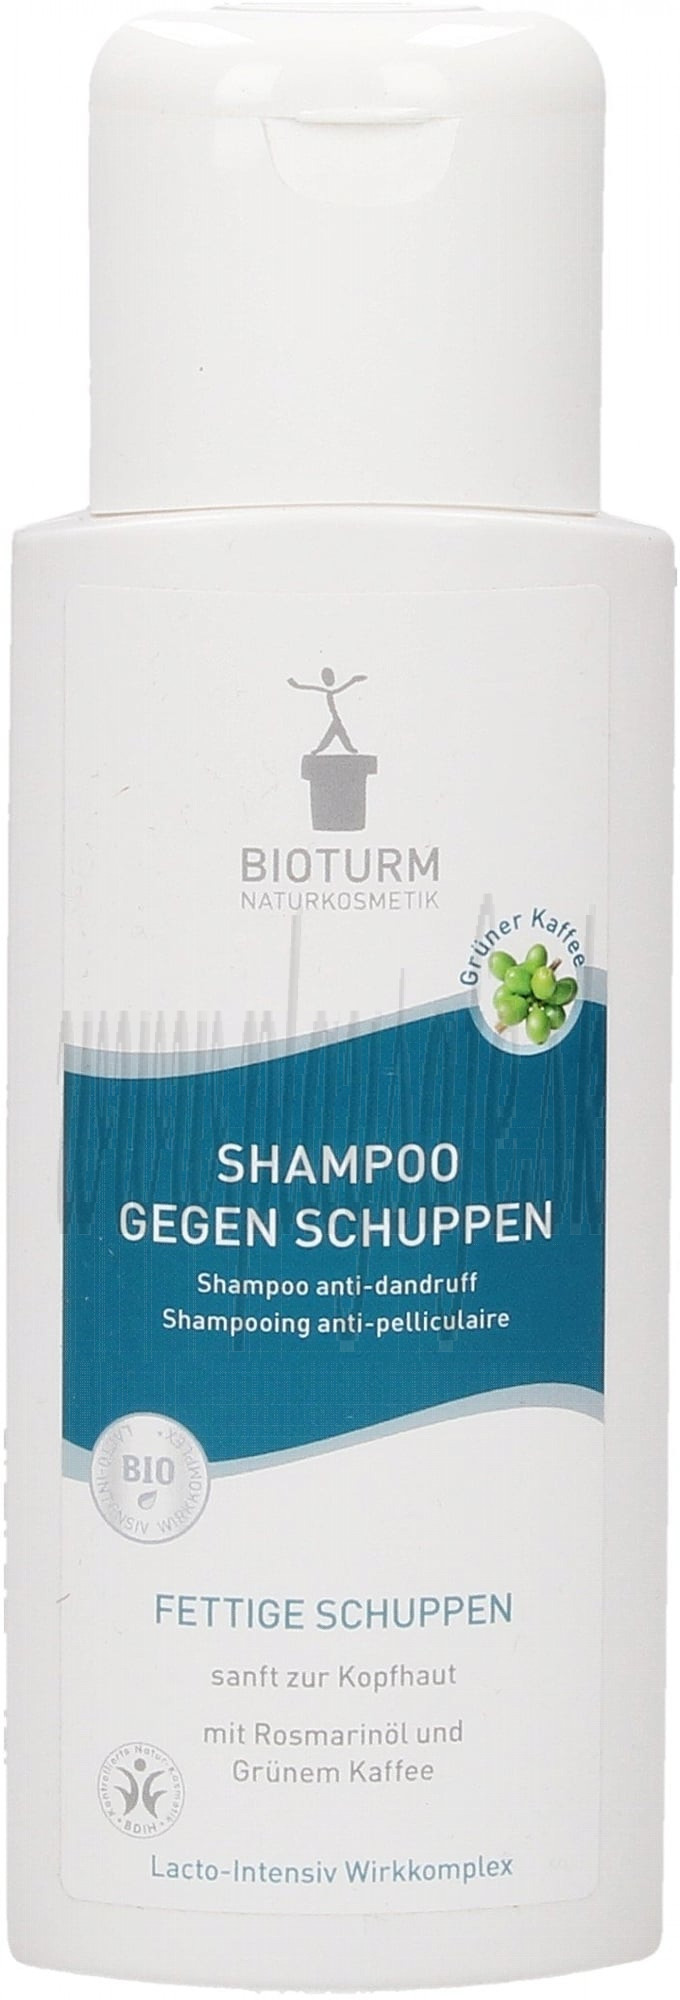  Bioturm Anti-Dandruff Shampoo, 200ml